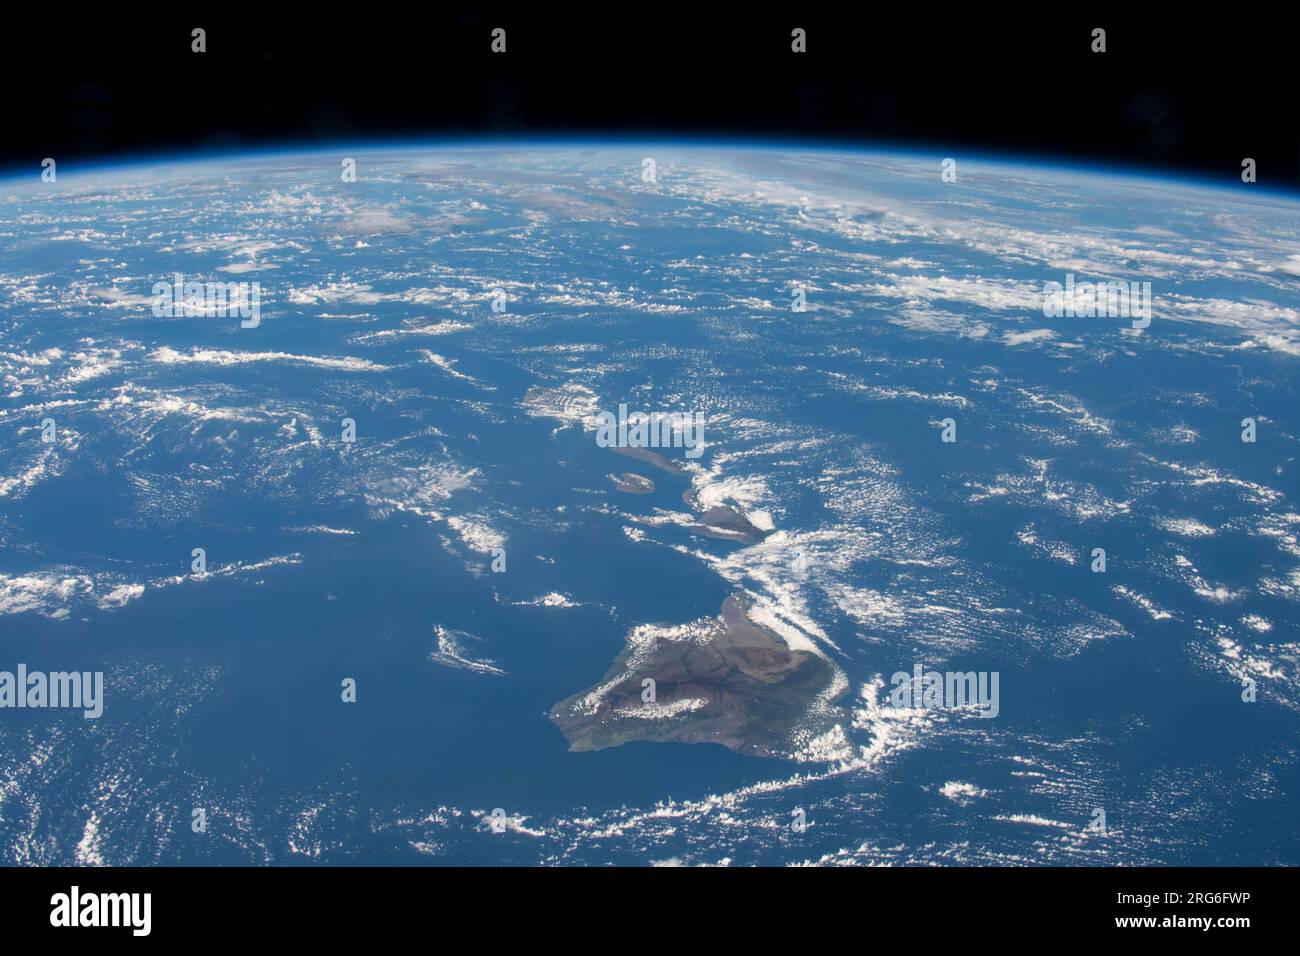 La catena delle isole Hawaii è raffigurata come la stazione spaziale Internazionale orbita sopra l'Oceano Pacifico. Foto Stock